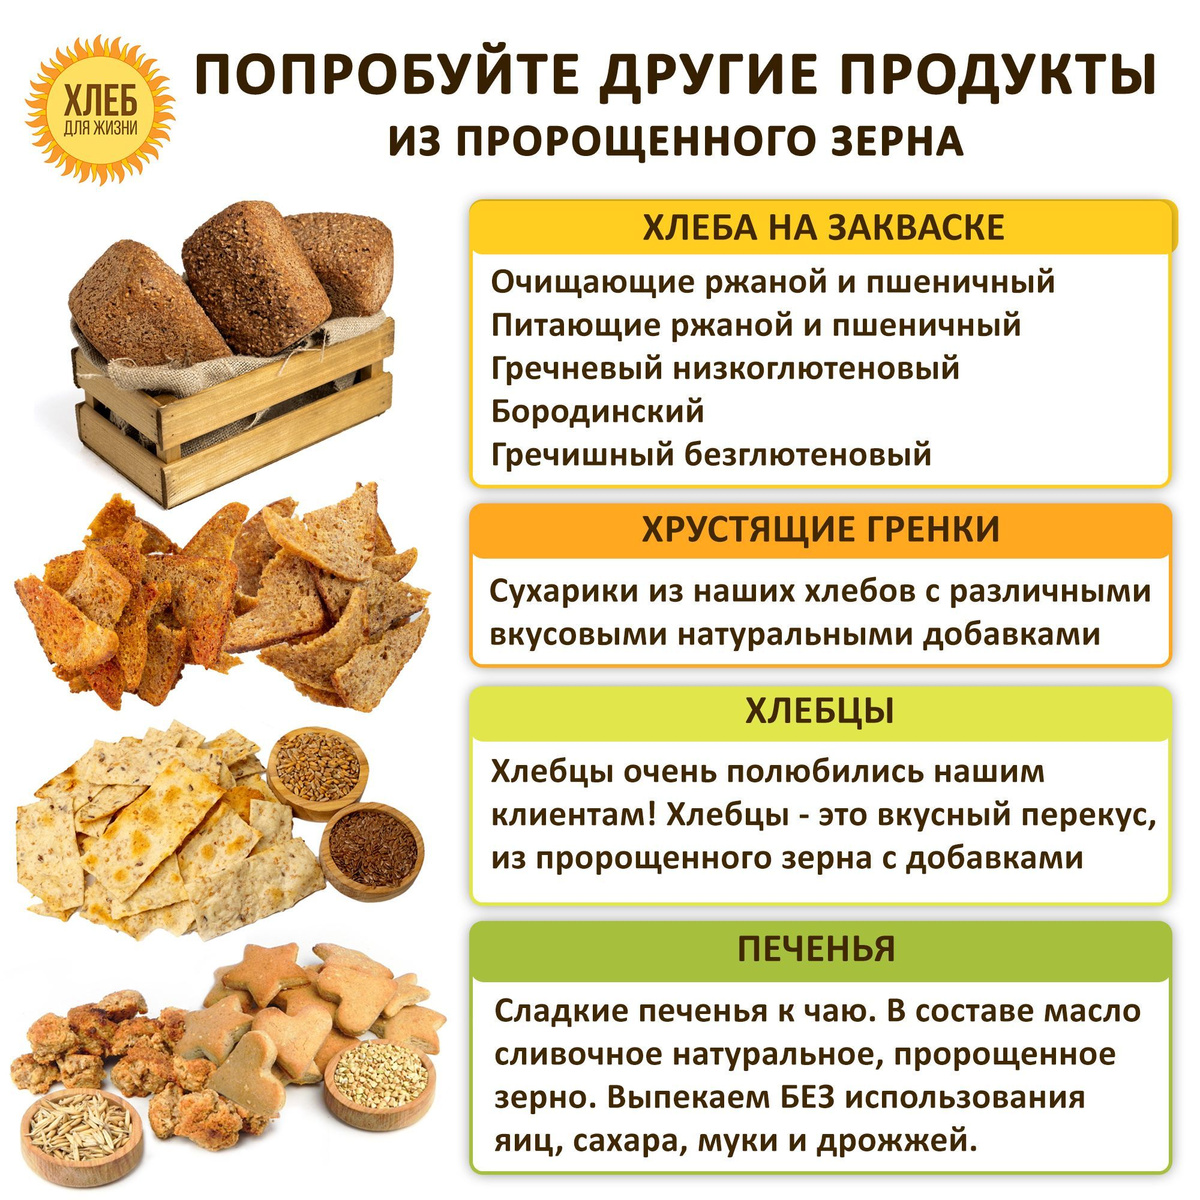 Попробуйте другие продукты "Хлеб для жизни"